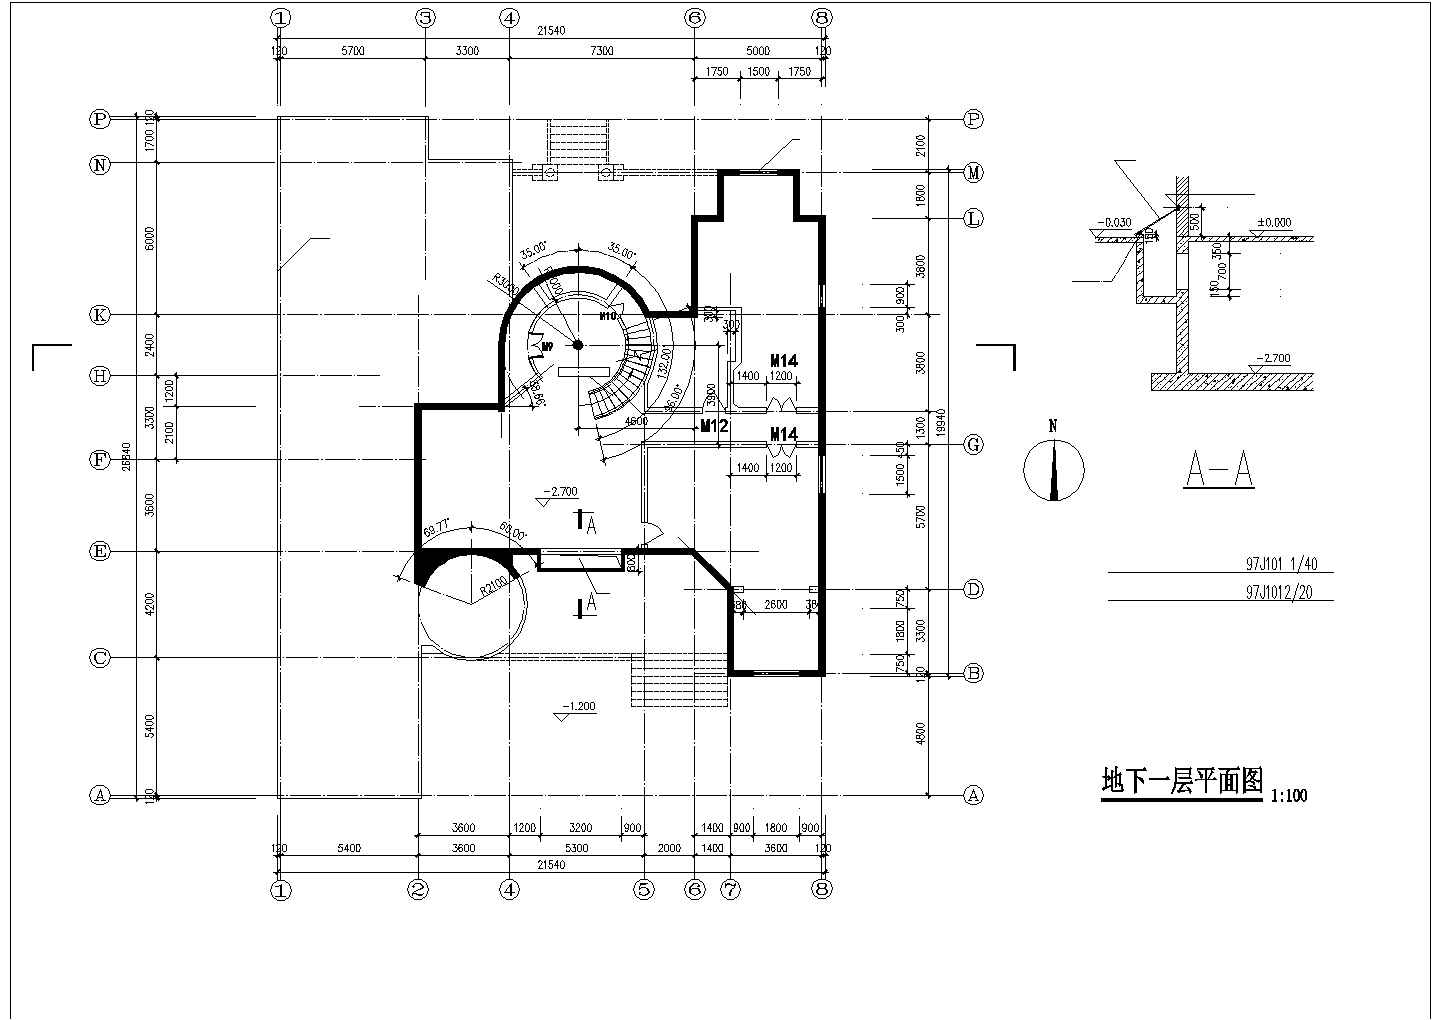 某两层别墅建筑设计施工图（平立剖面、旋转楼梯、卫生间等）